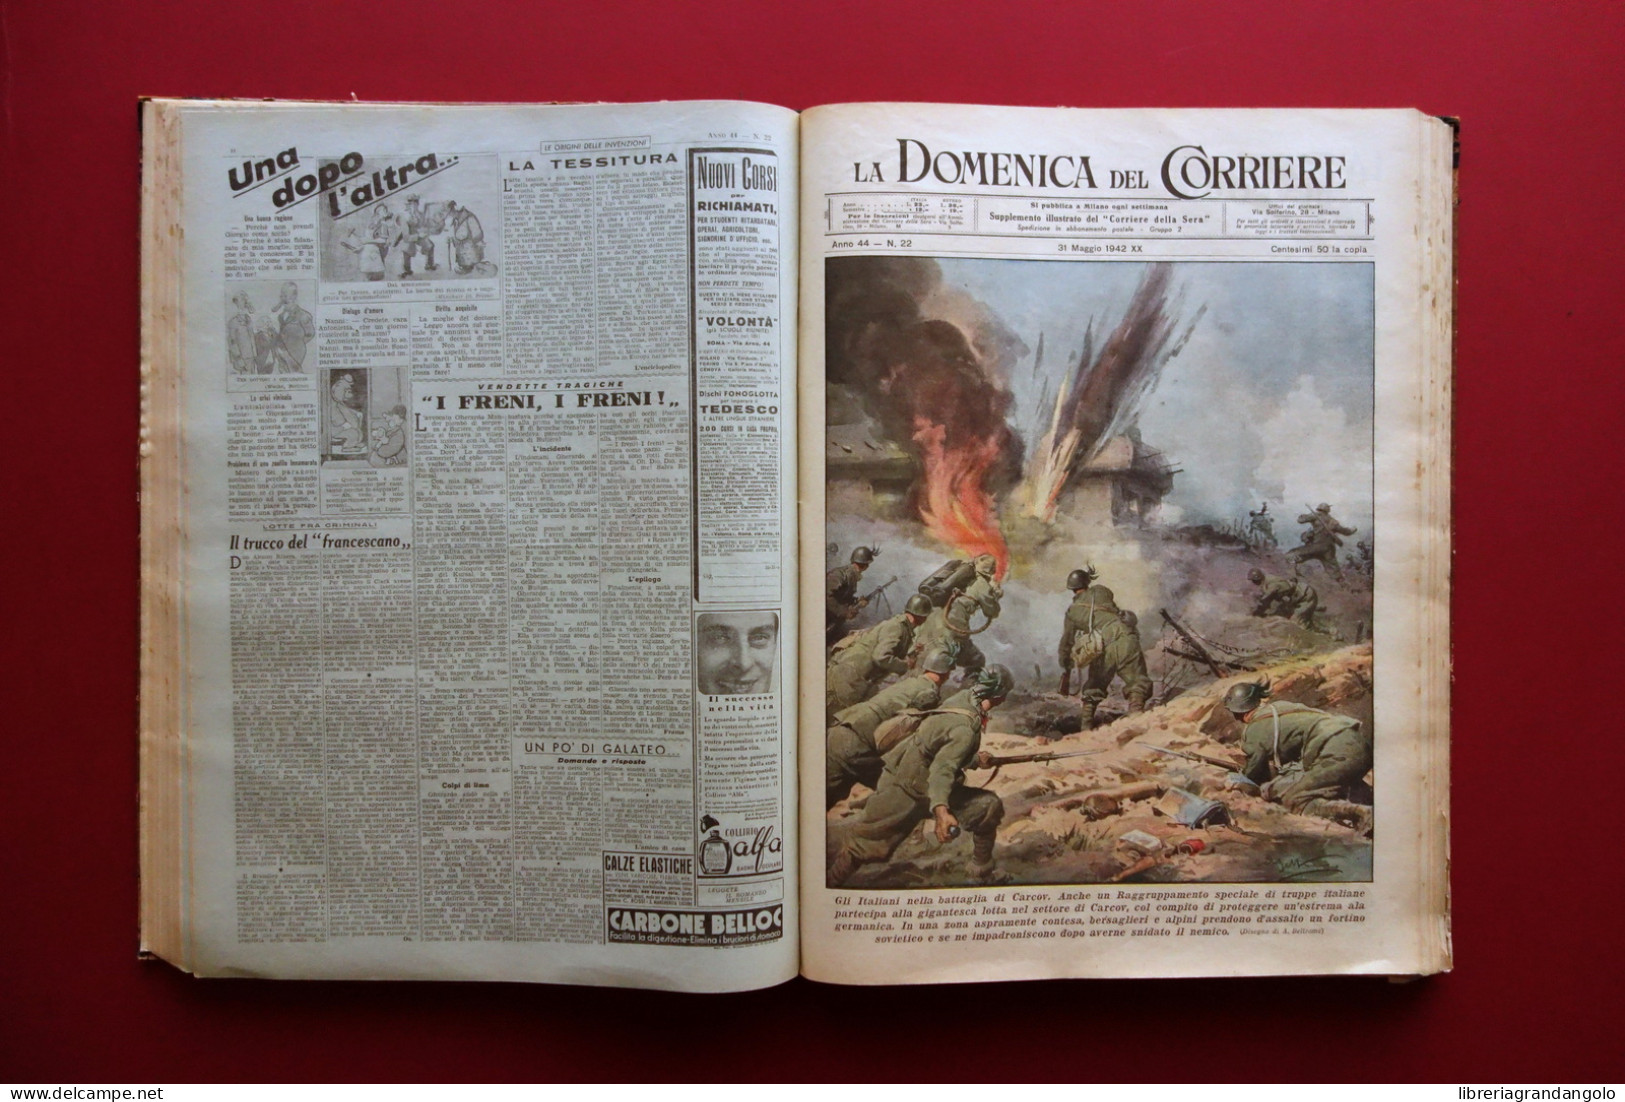 La Domenica del Corriere Anno 44 52 Numeri 1942 Anno Completo WW2